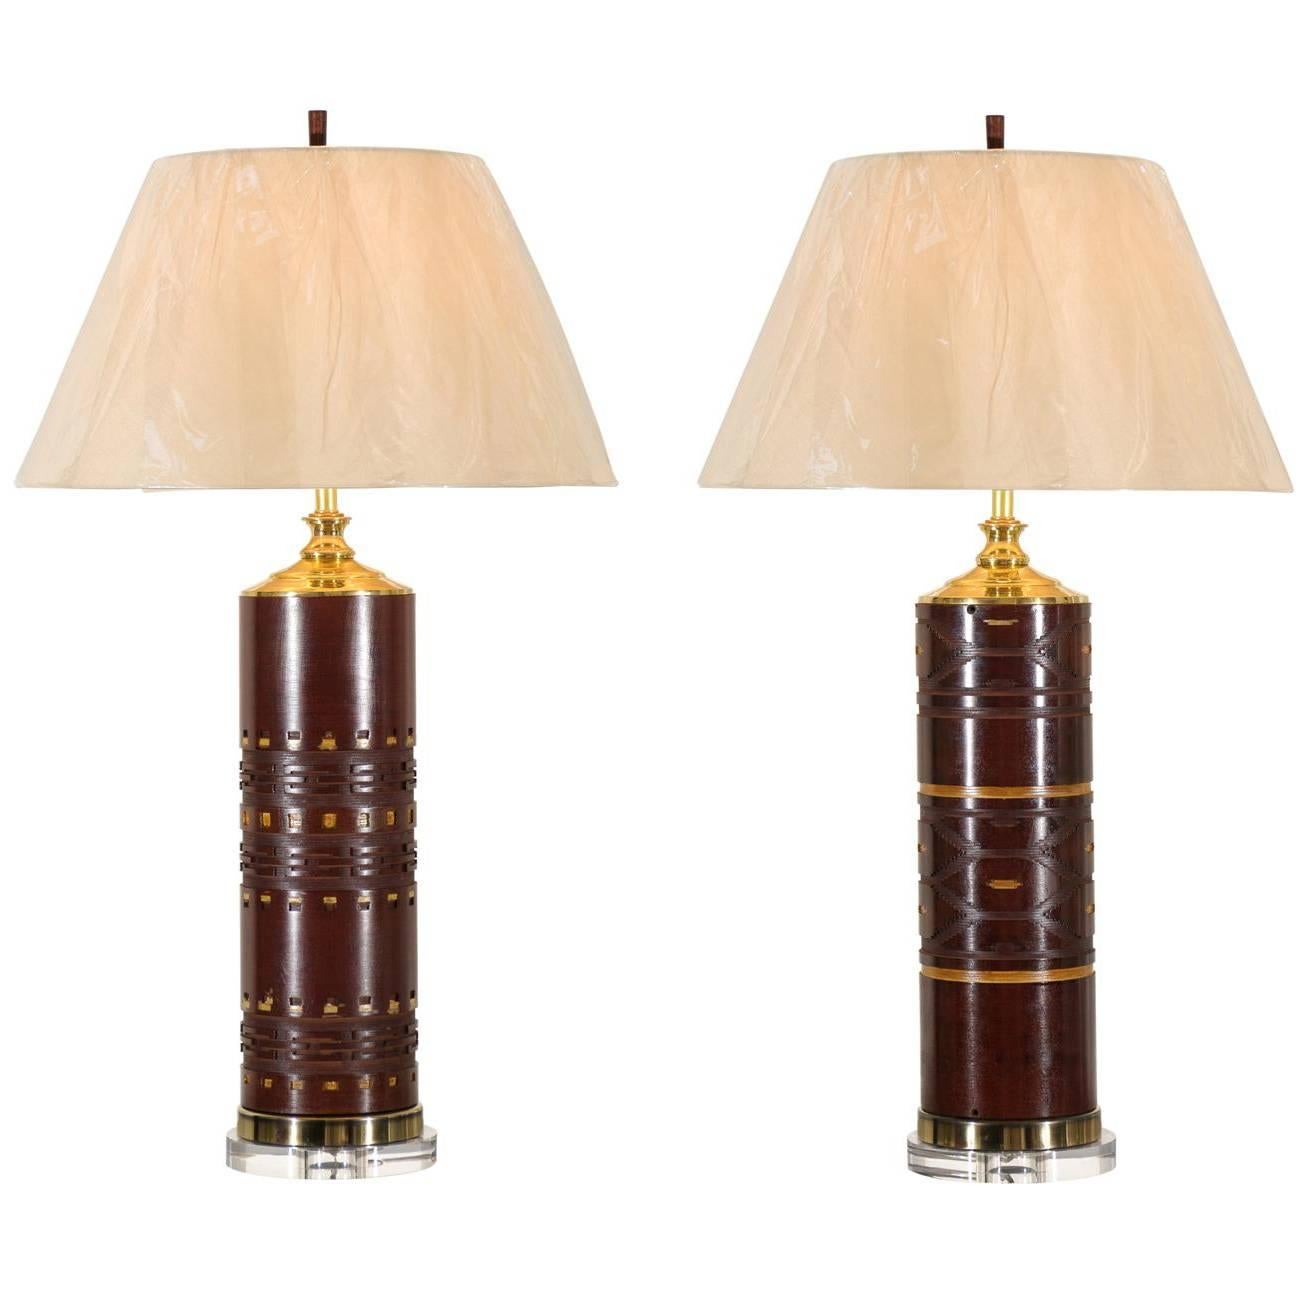 Ein schönes restauriertes Paar Vintage-Tapete-Roller als Lampen